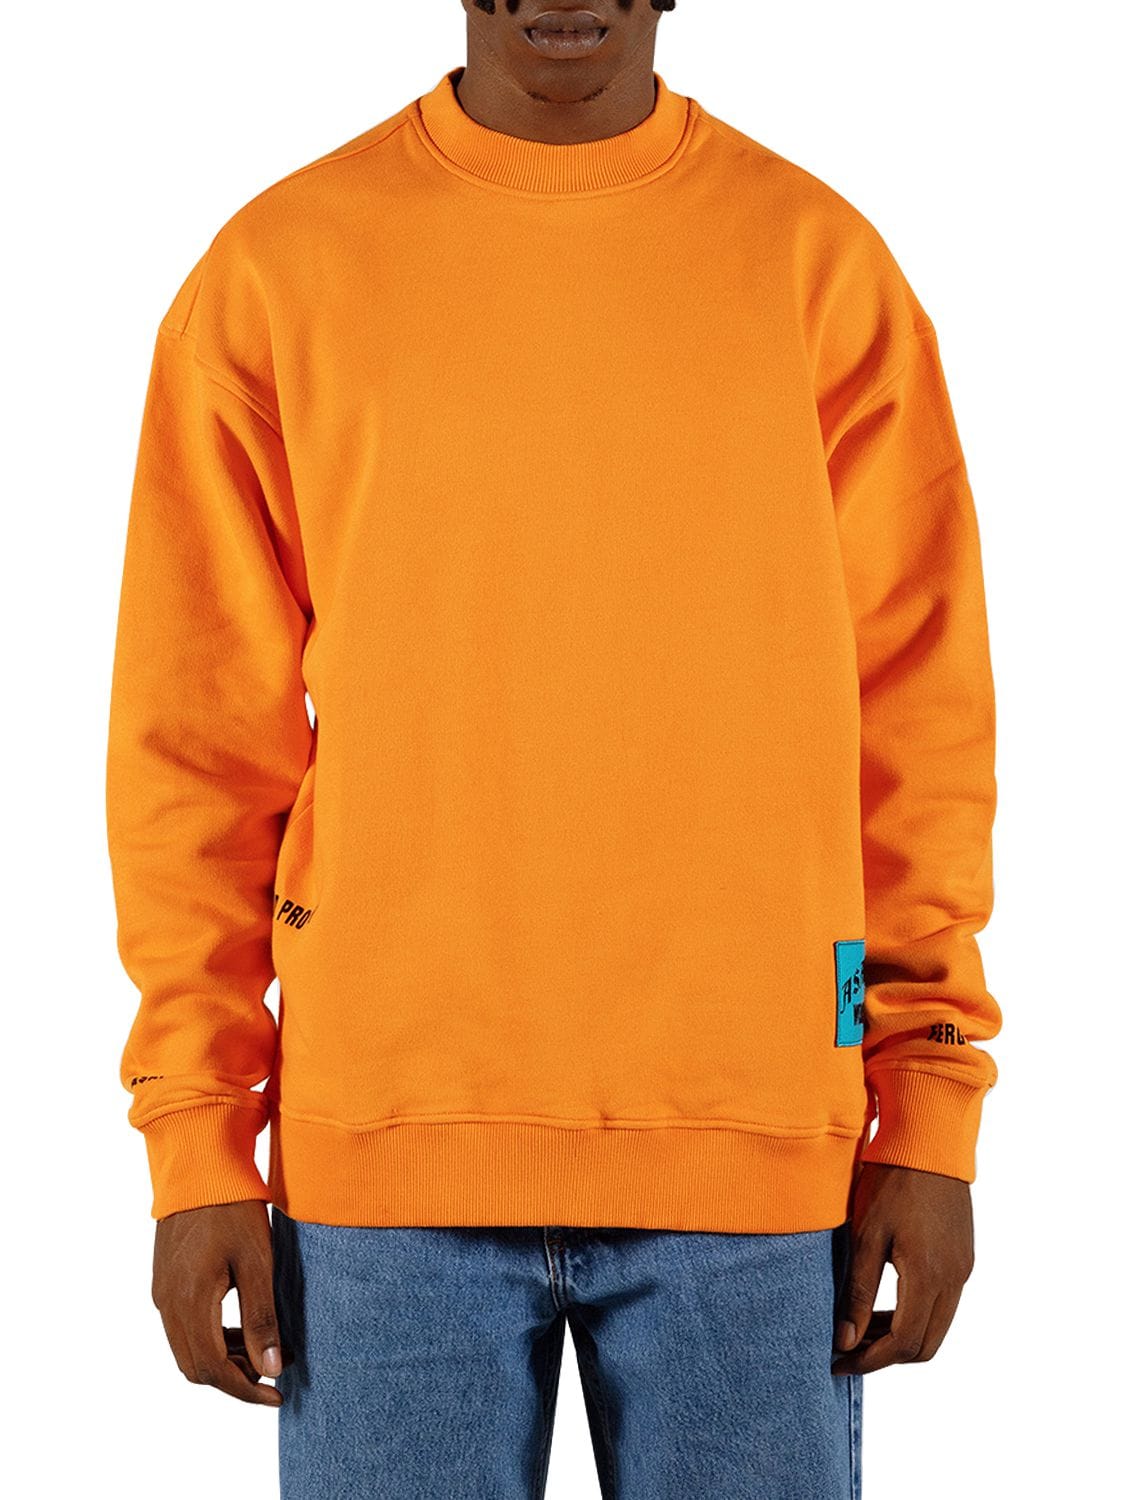 A$ap Ferg By Platformx Over Printed Cotton Jersey Sweatshirt In Orange